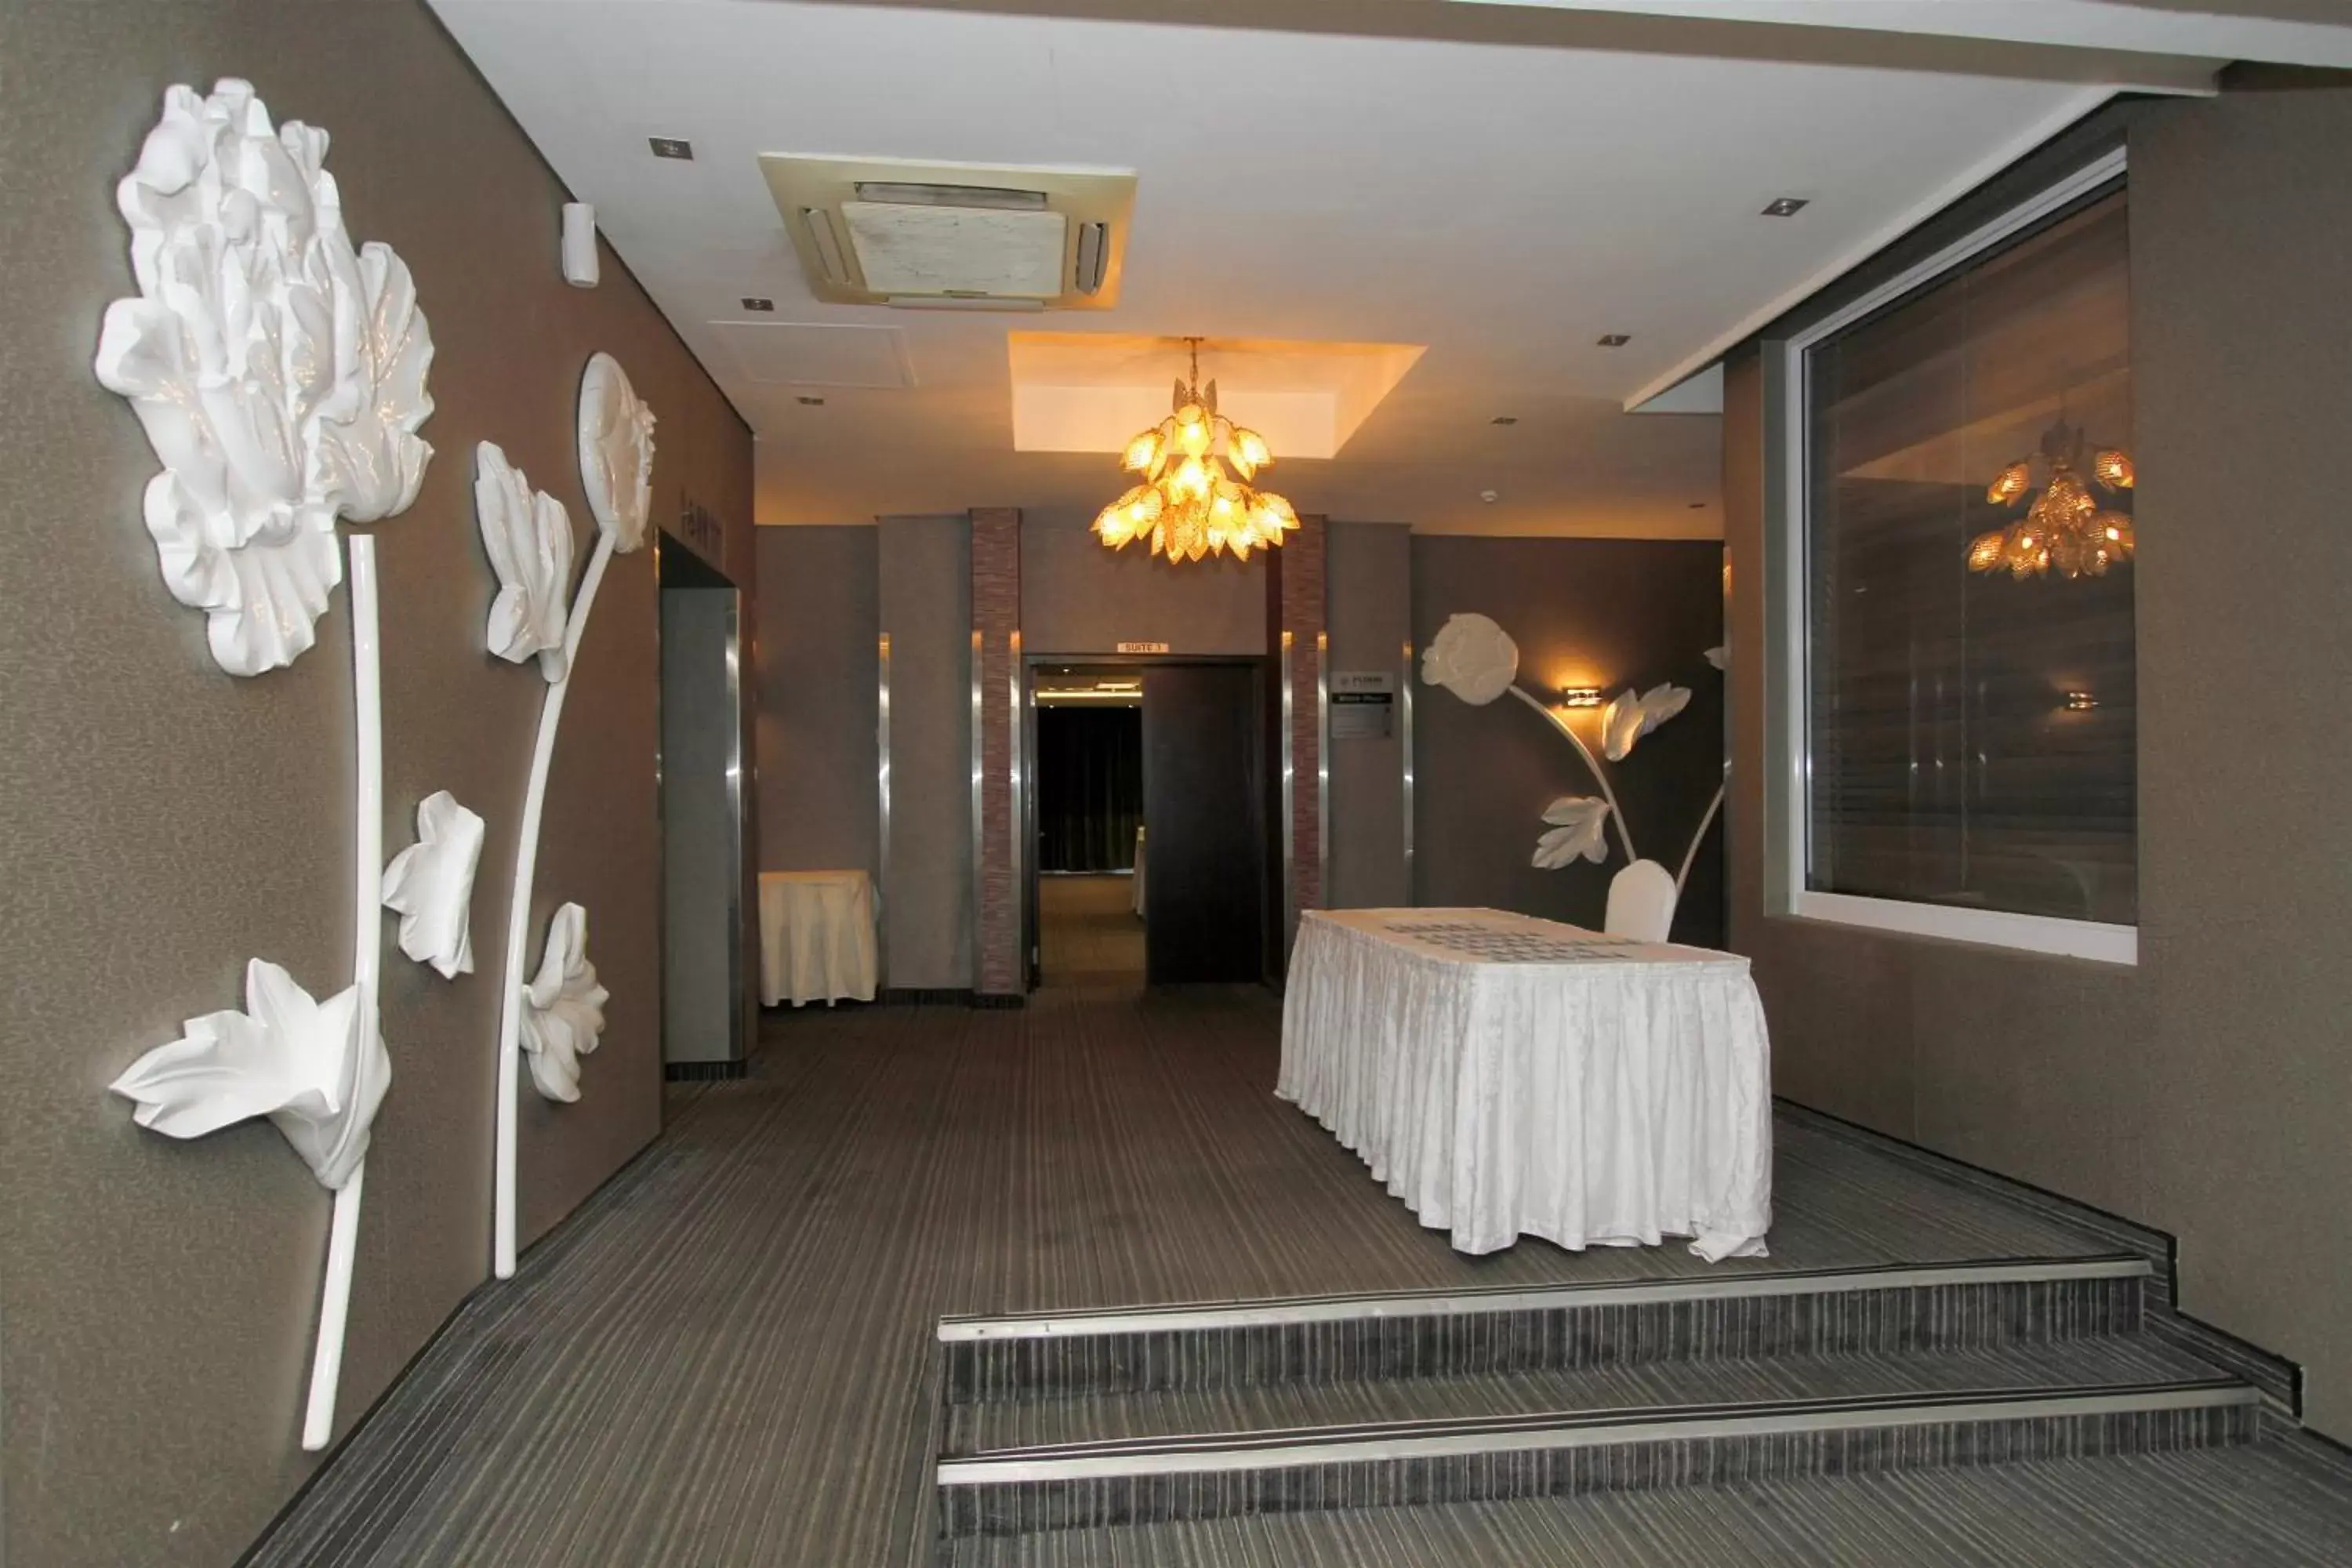 Banquet/Function facilities in Coastlands Musgrave Hotel